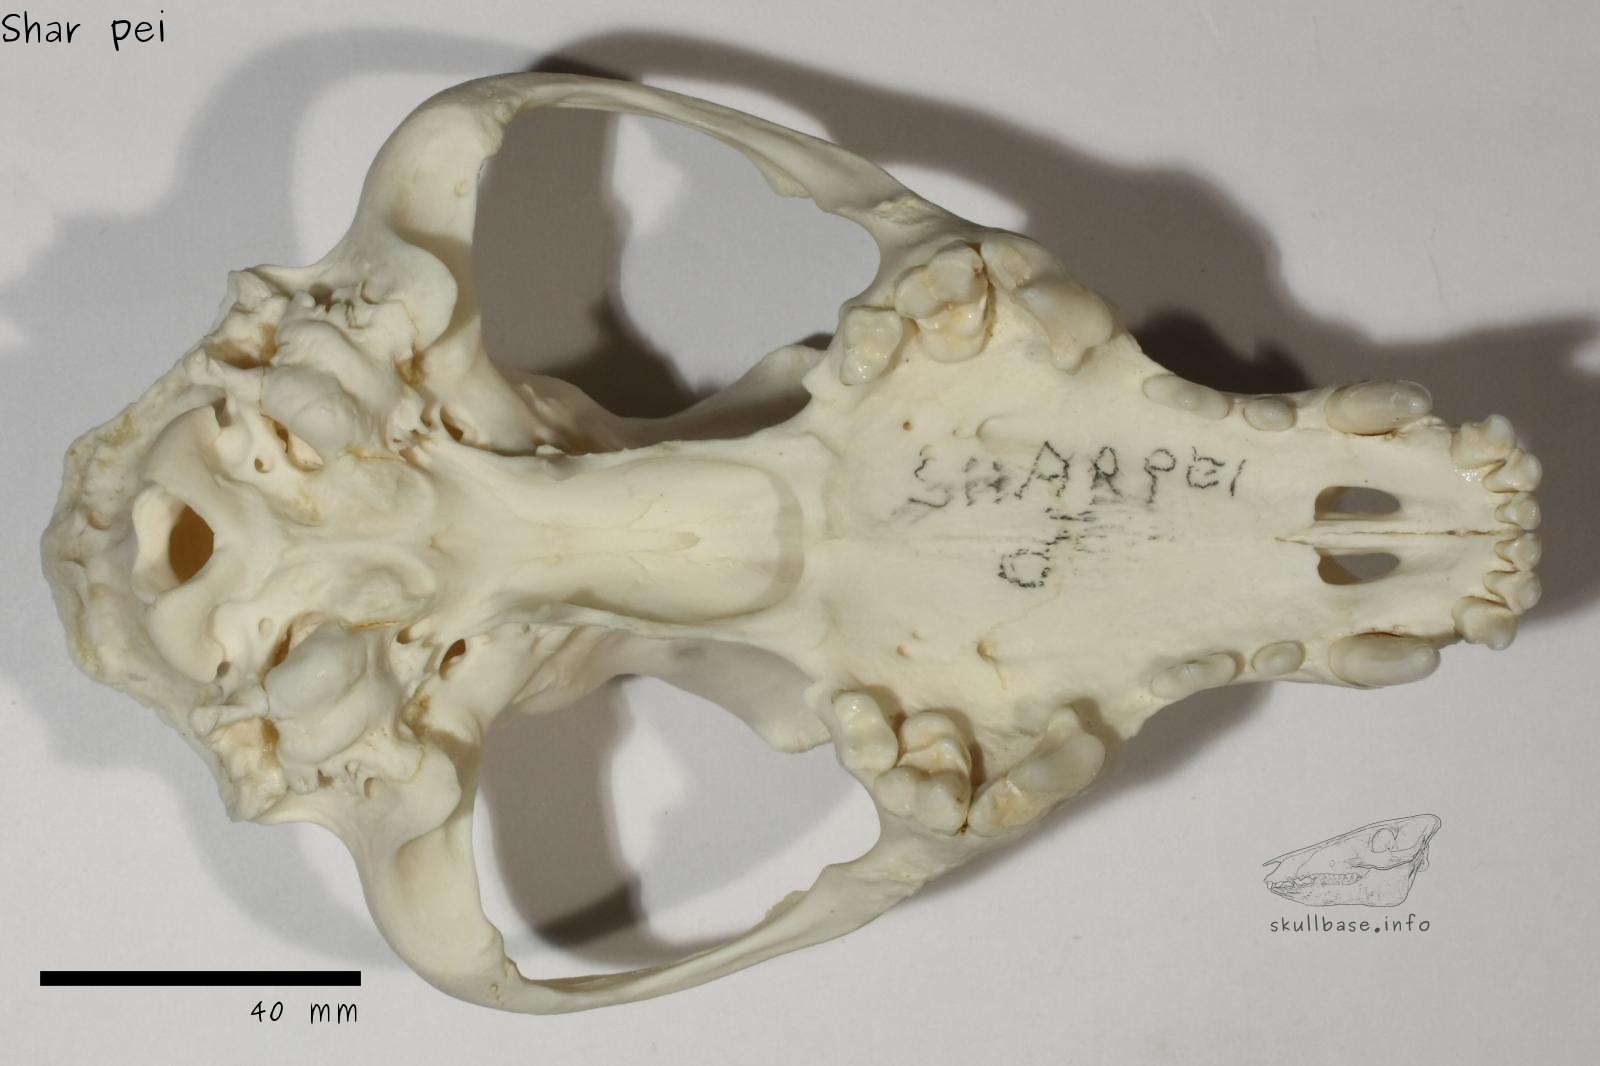 Shar pei (Canis lupus familiaris) skull ventral view